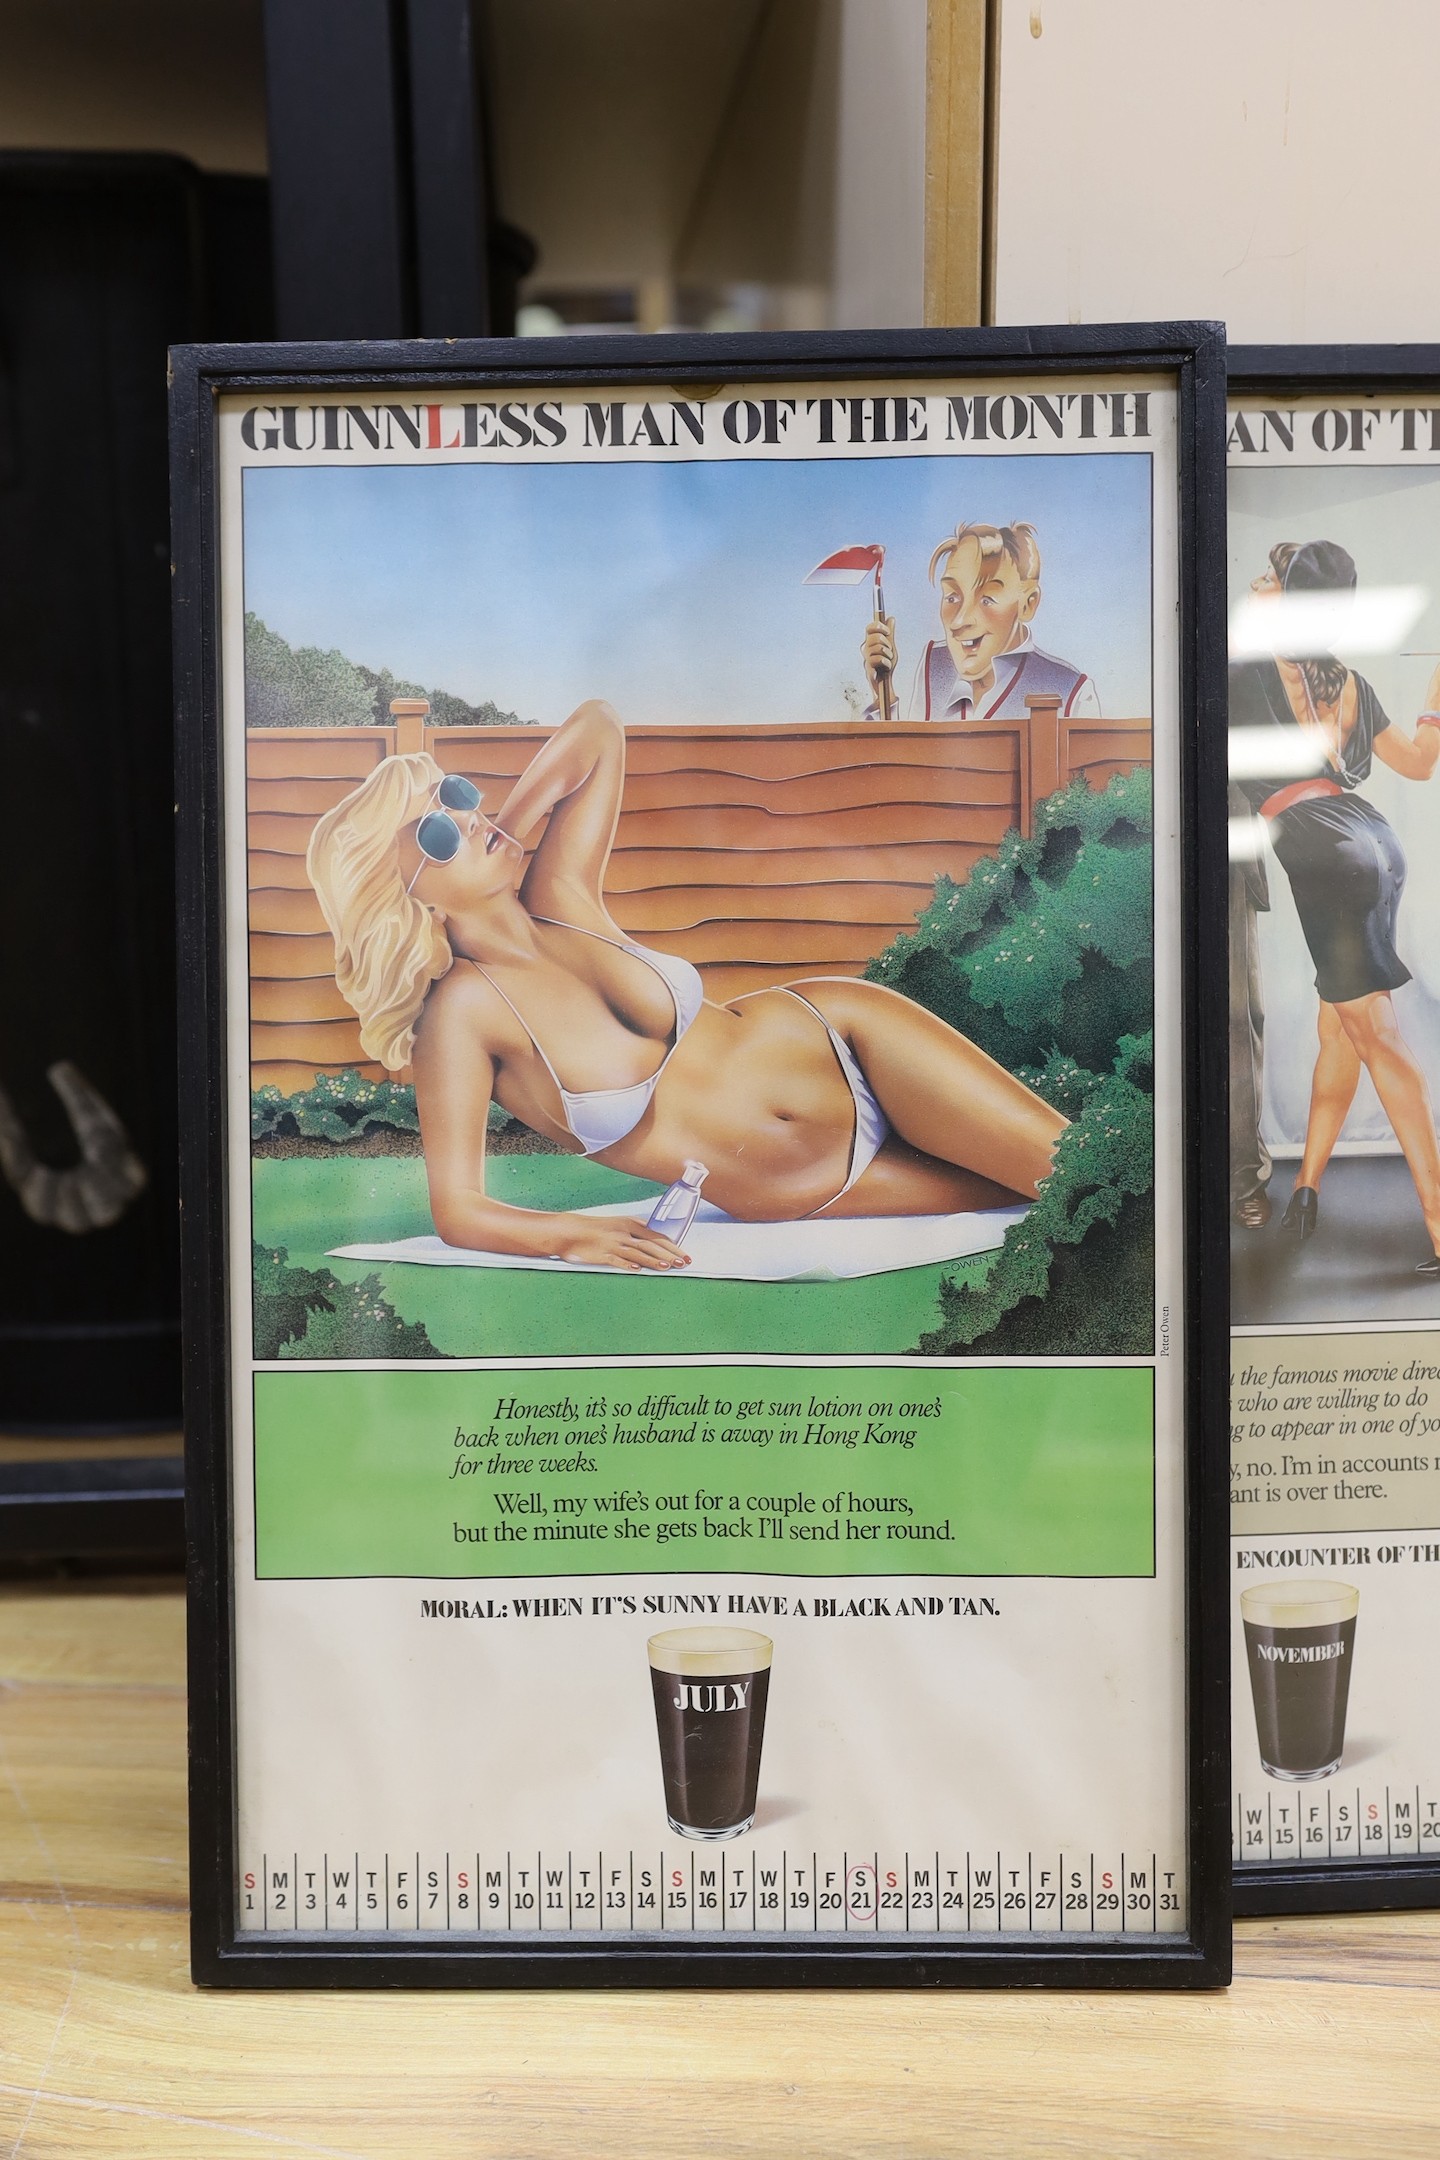 Guinness Advertising - 11 framed Guinnless man of the Month posters